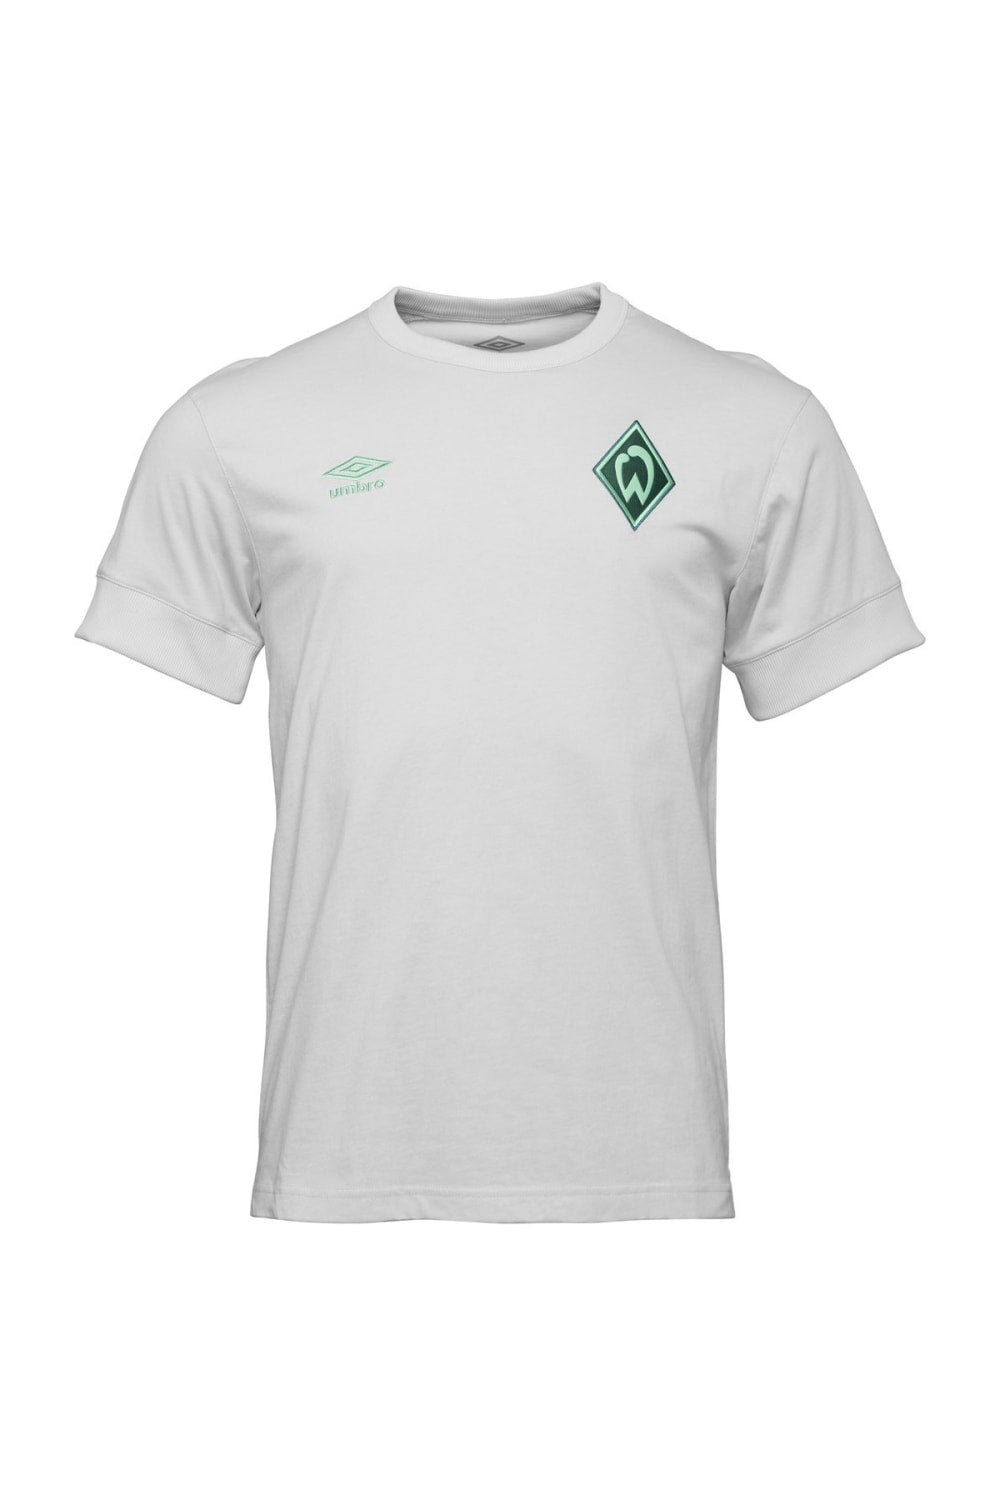 SV Werder Bremen Mens 22/23 Travel T-Shirt